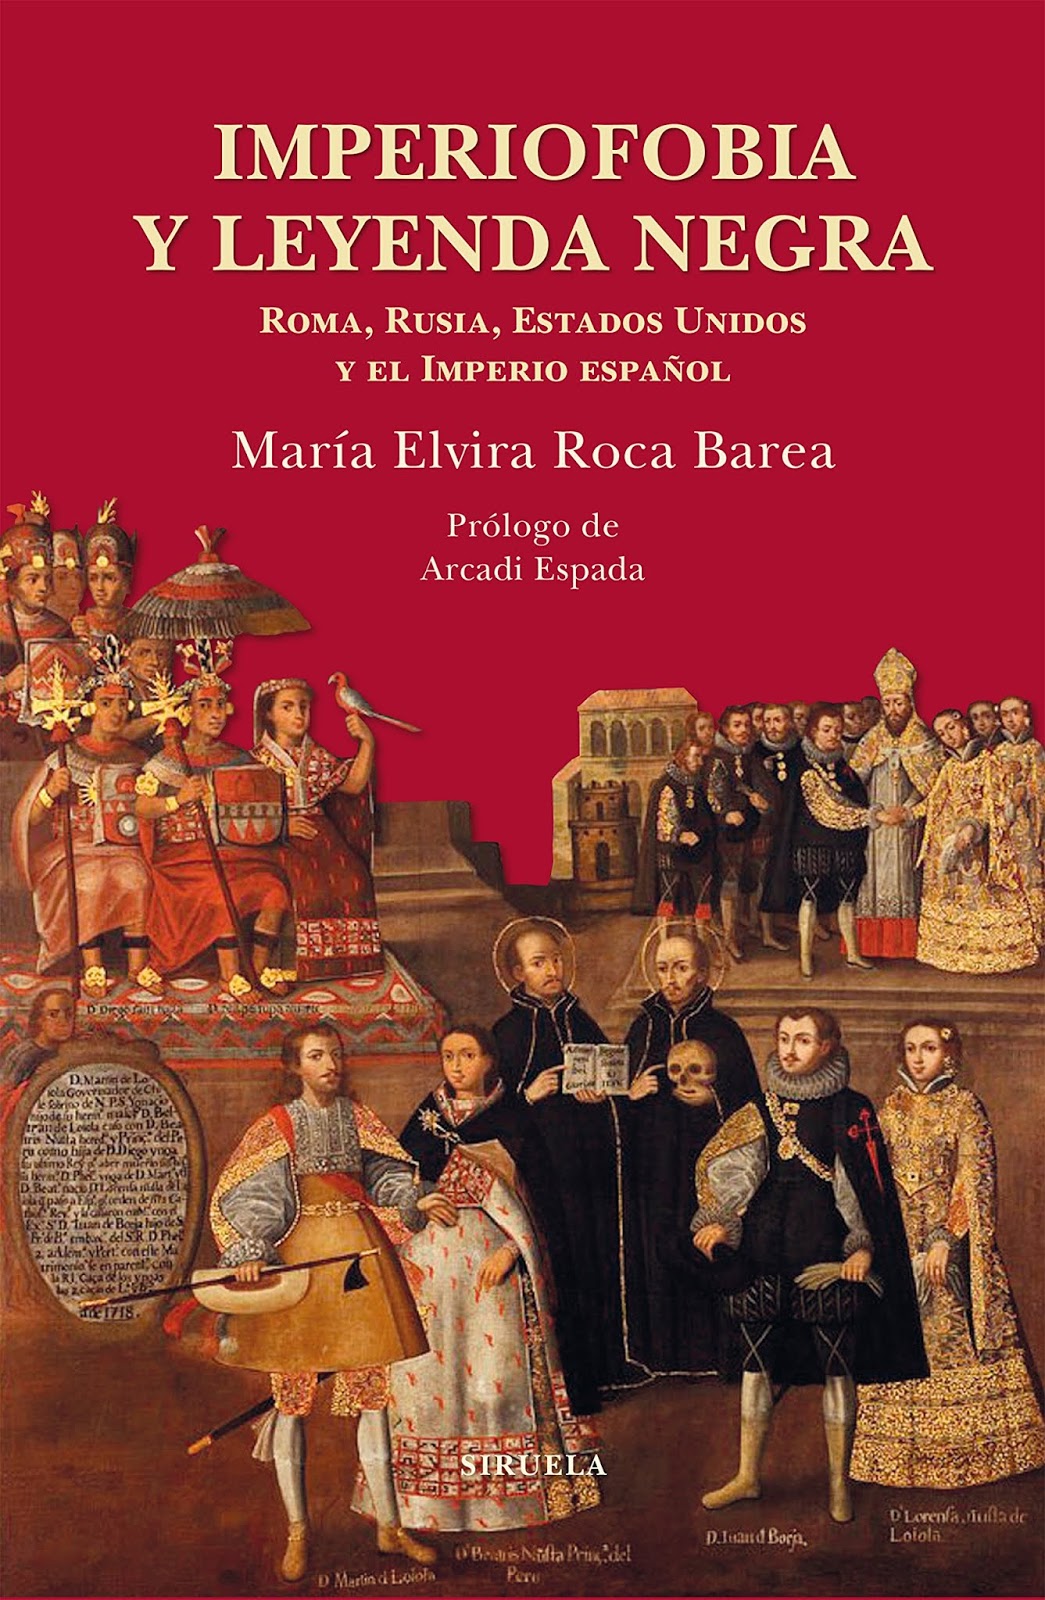 Imperiofobia y leyenda negra: Roma, Rusia, Estados Unidos y el Imperio español, de Mª Elvira Roca Barea